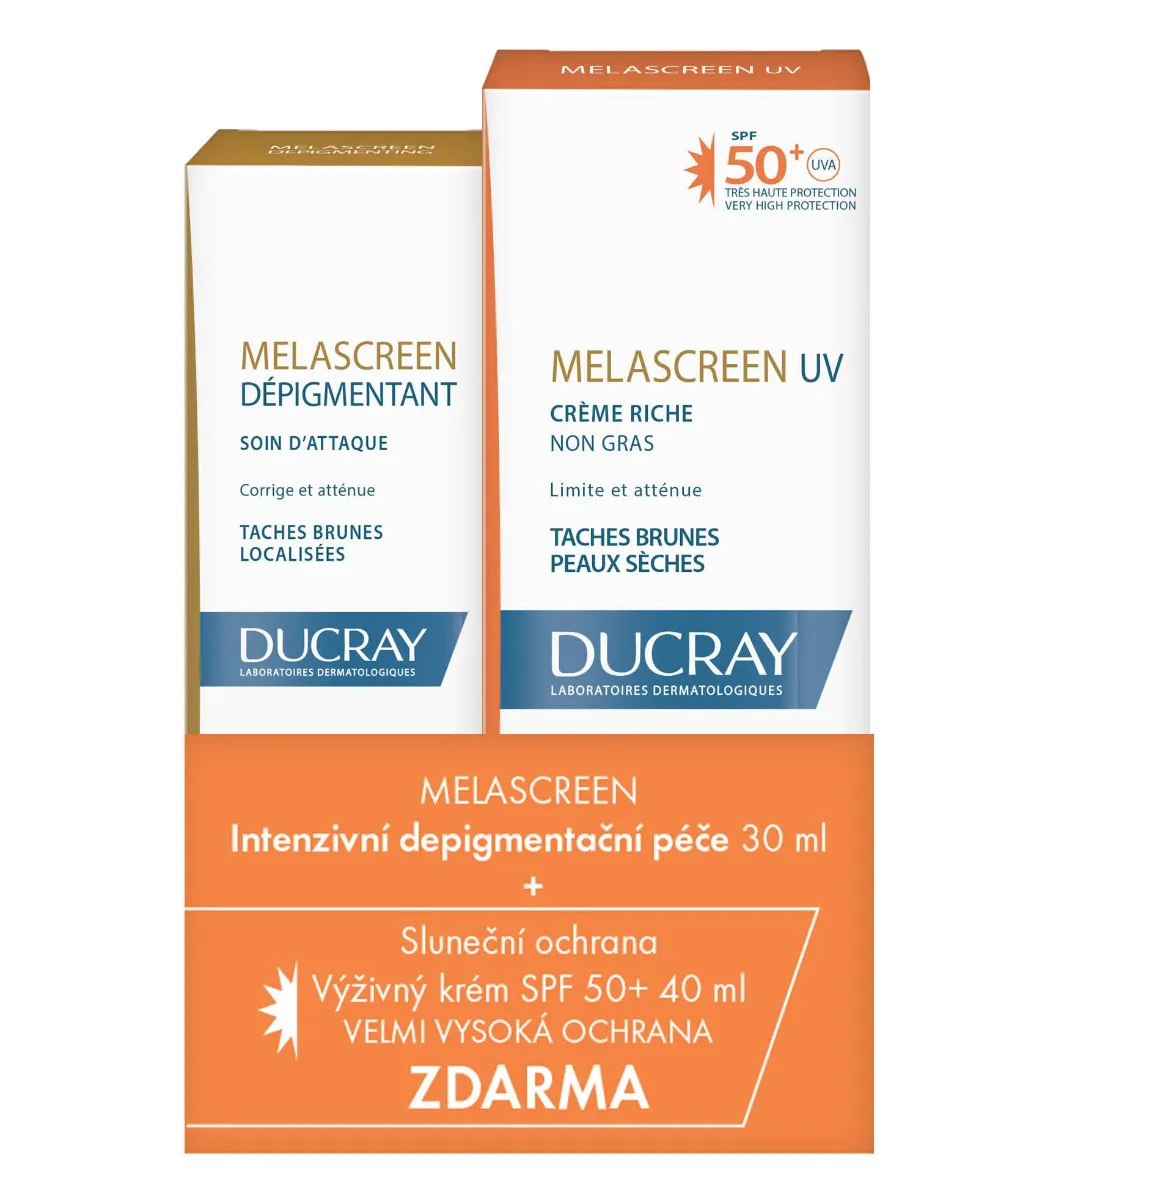 Ducray Melascreen Intenzivní depigmentační péče 30 ml + Výživný krém SPF50+ 40 ml